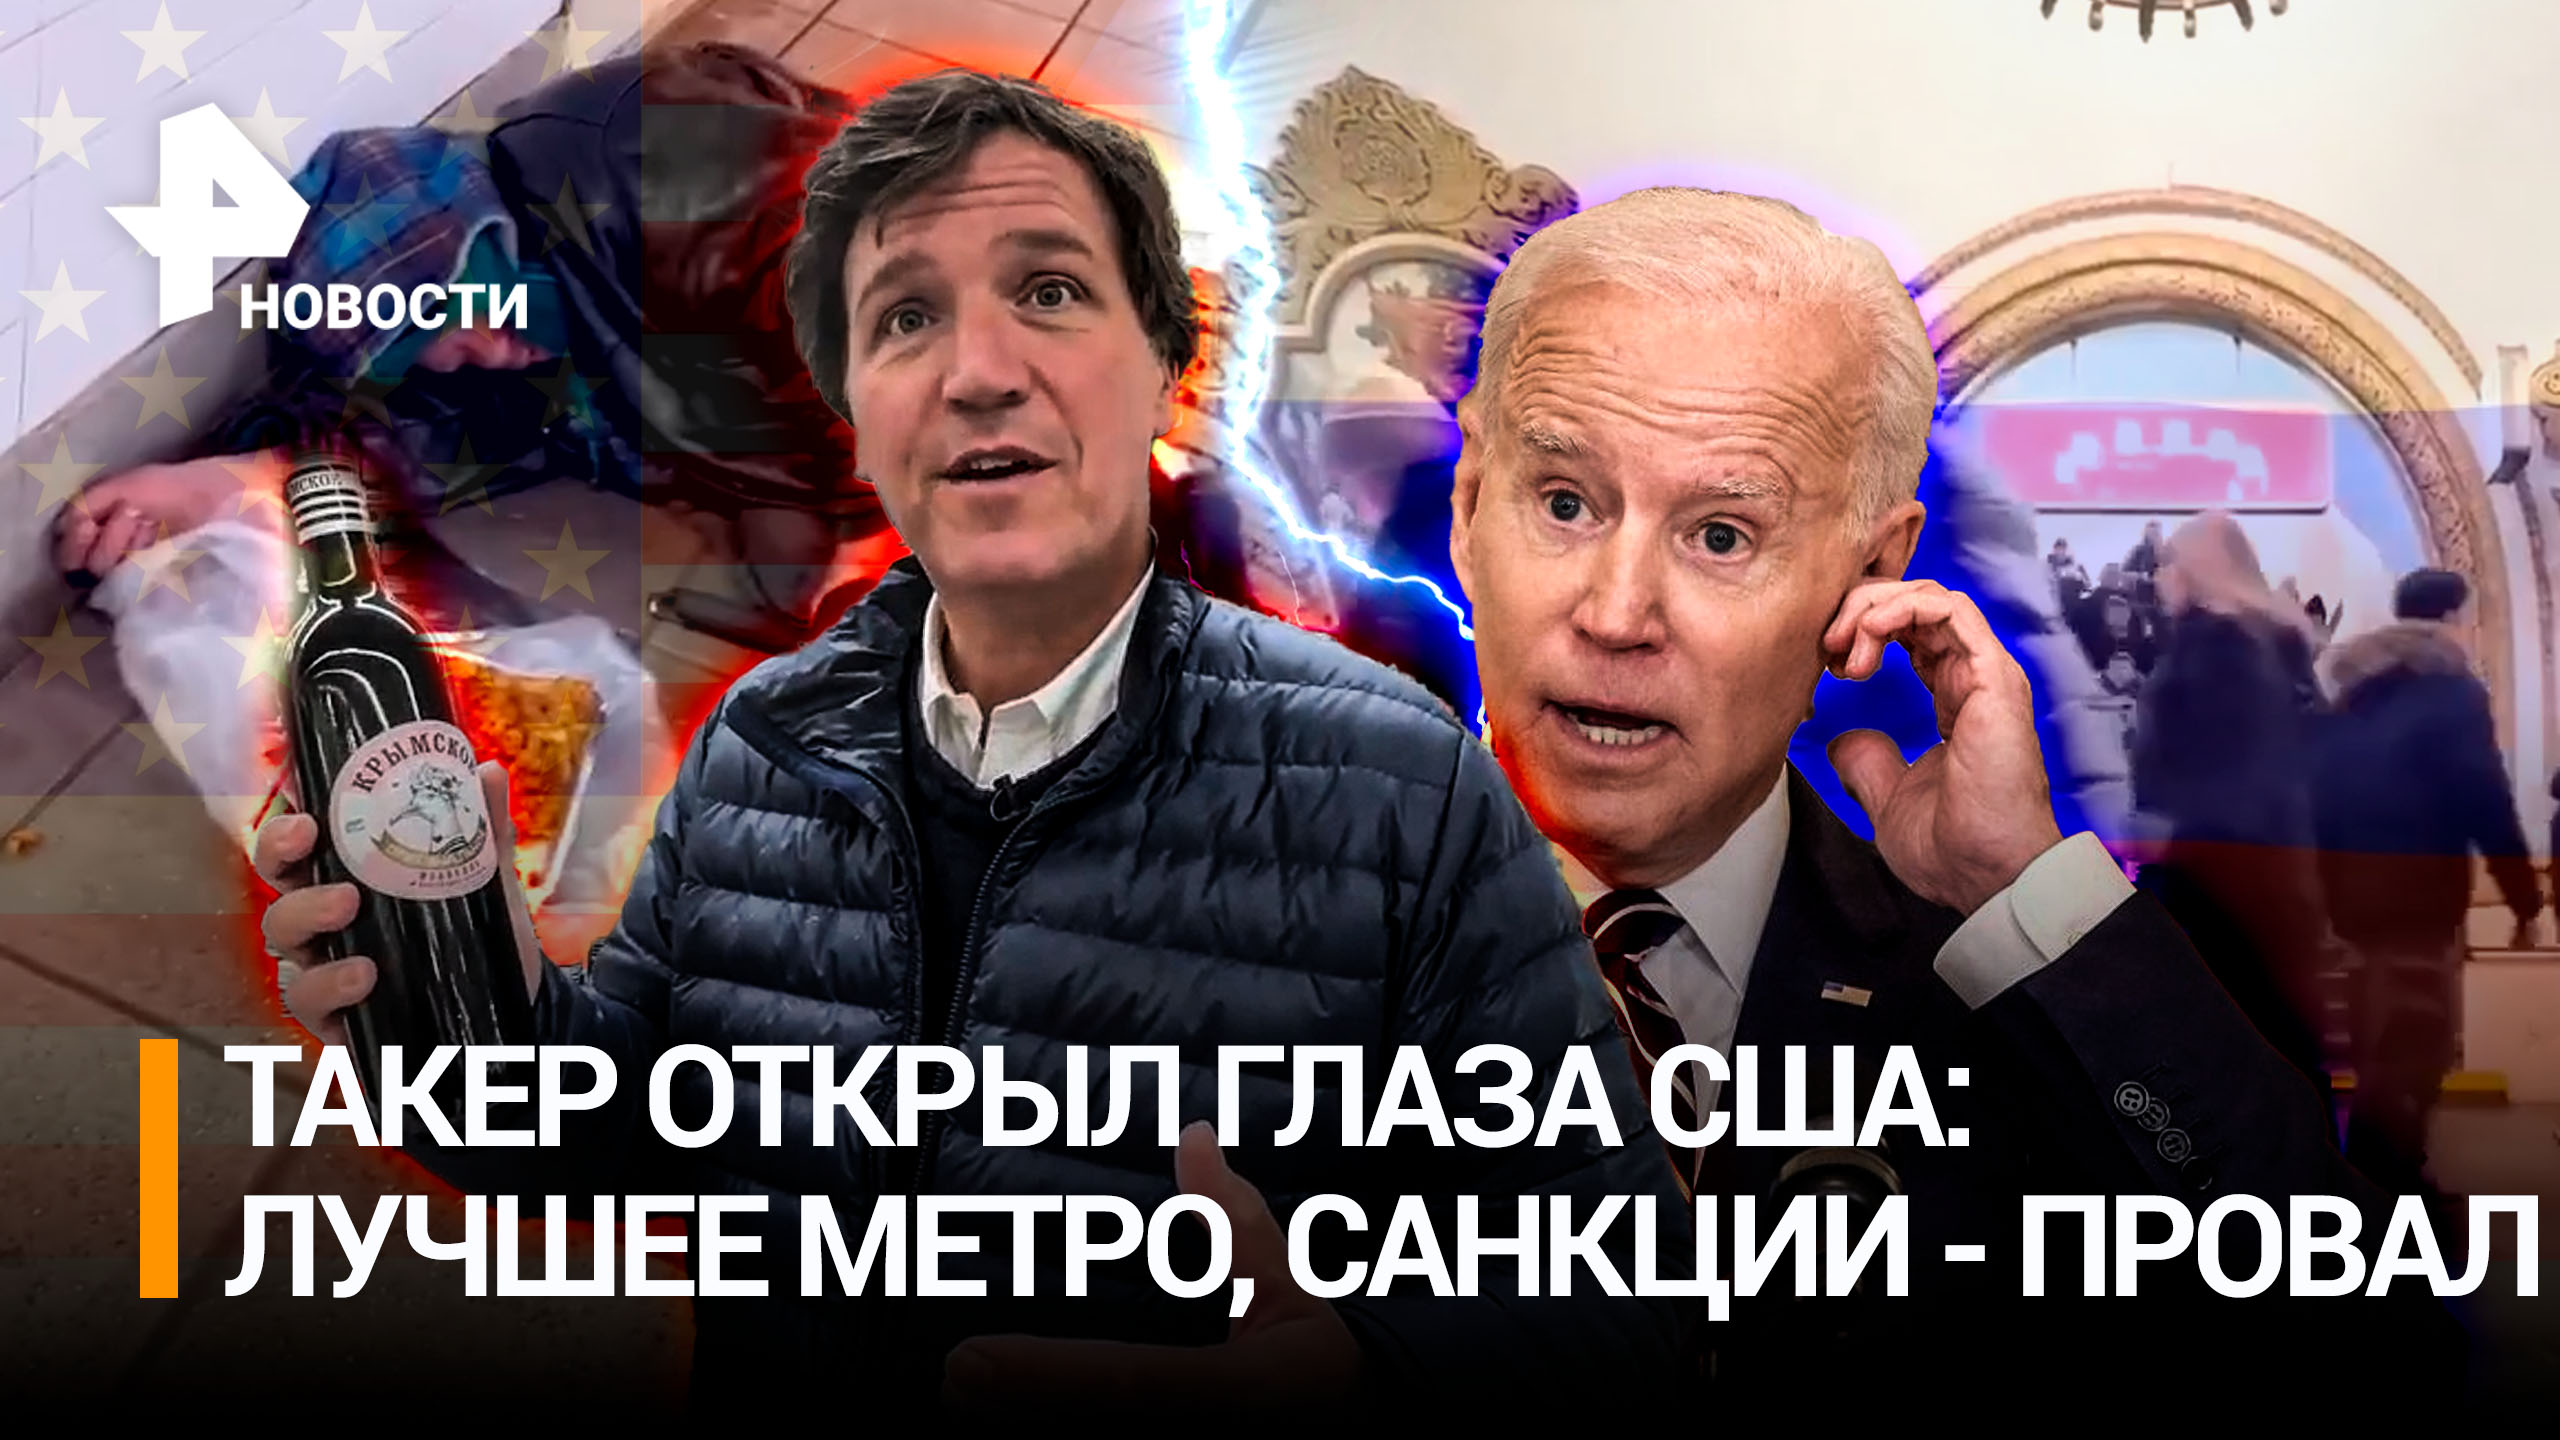 Такер Карлсон показал американцам настоящую Москву: санкции не работают, лучшее в мире метро